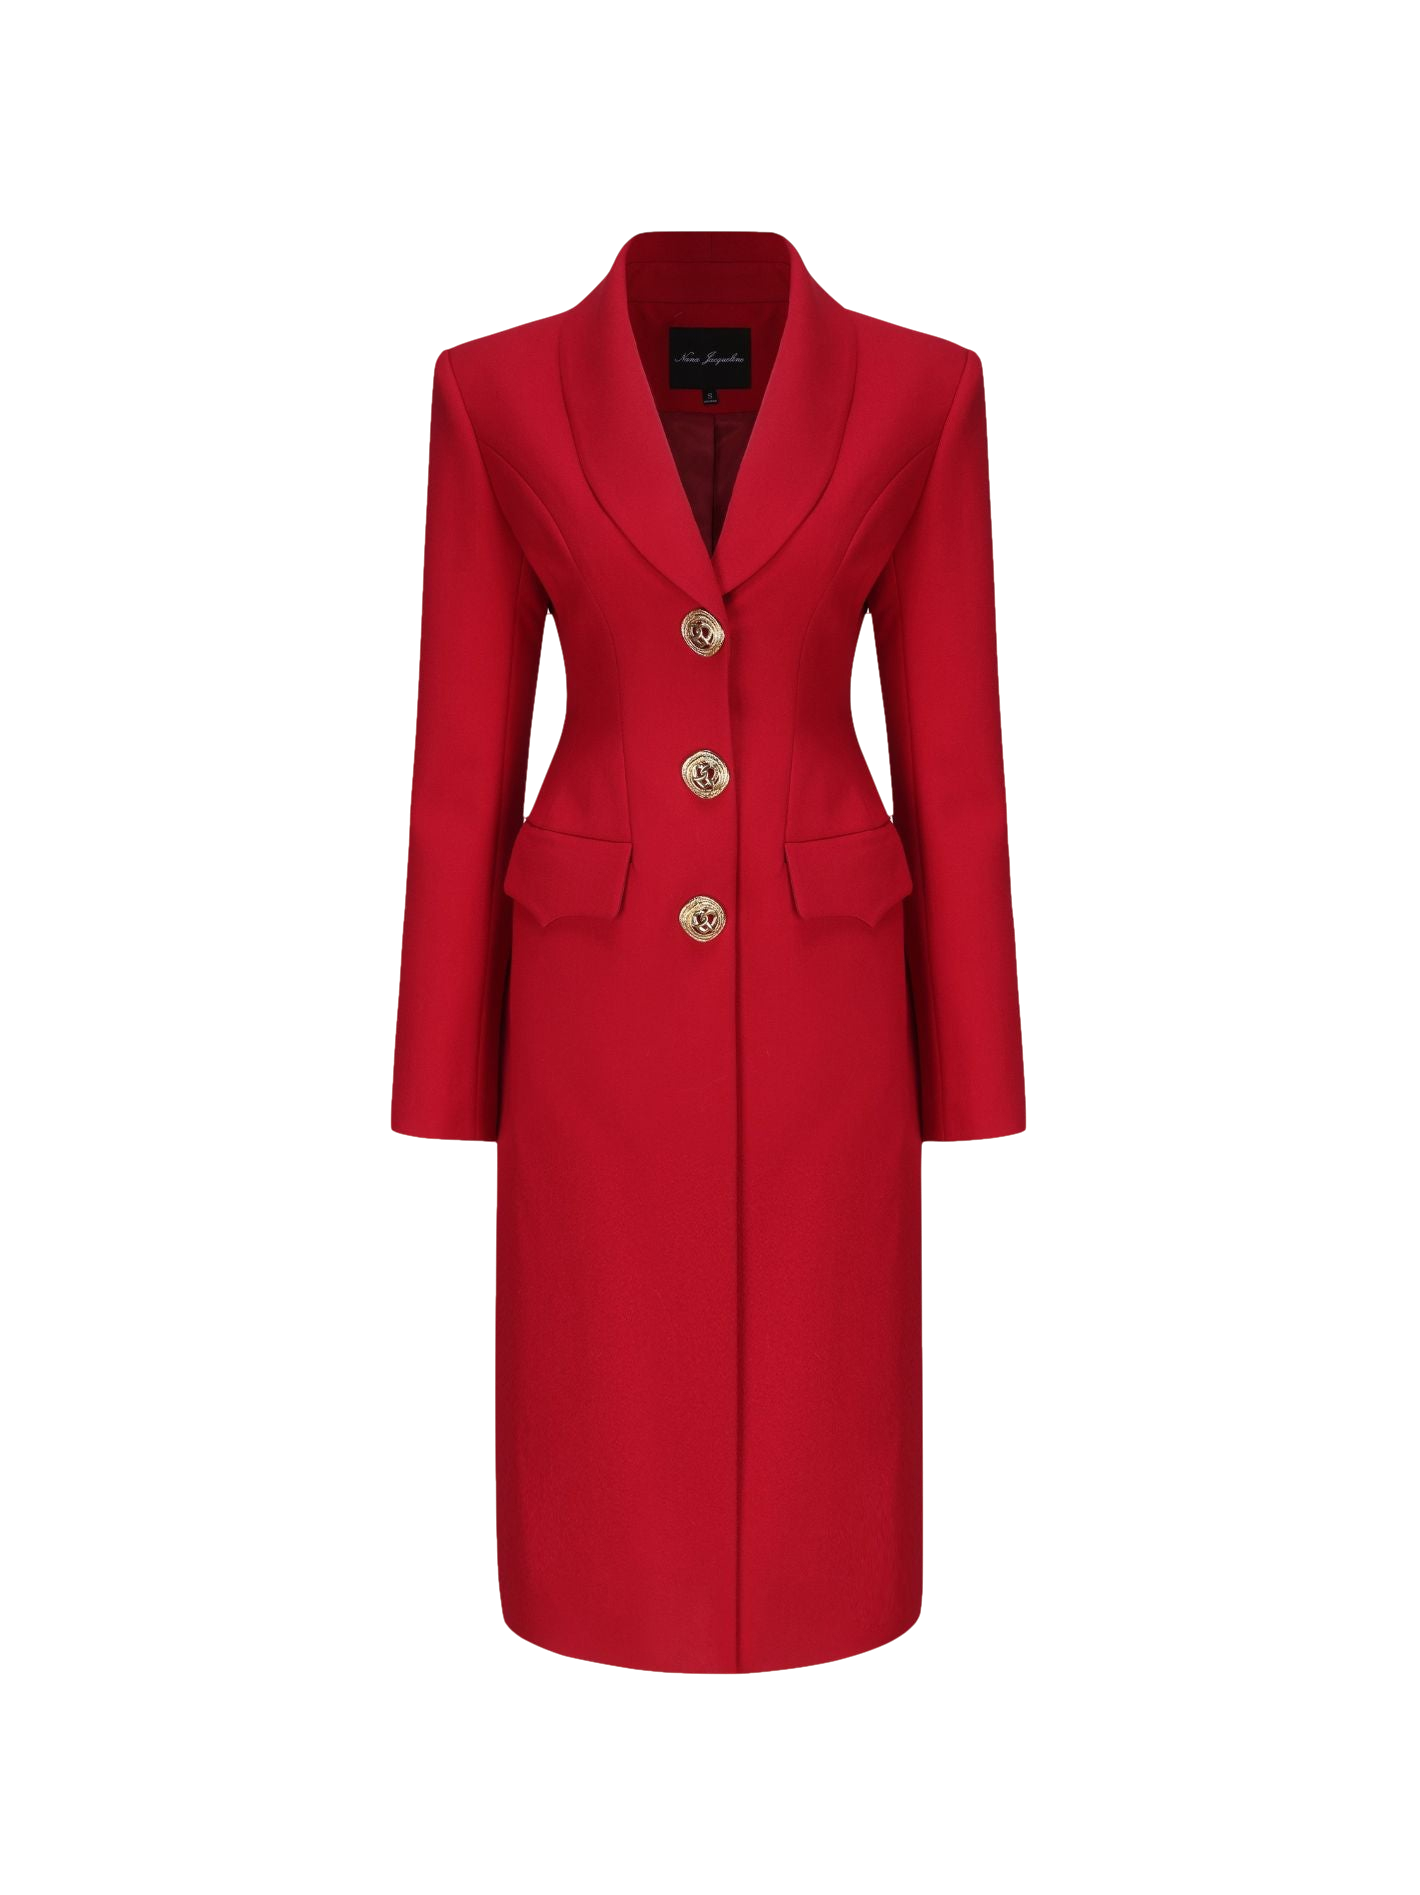 Nana Jacqueline Evie Long Suit Jacket (red)